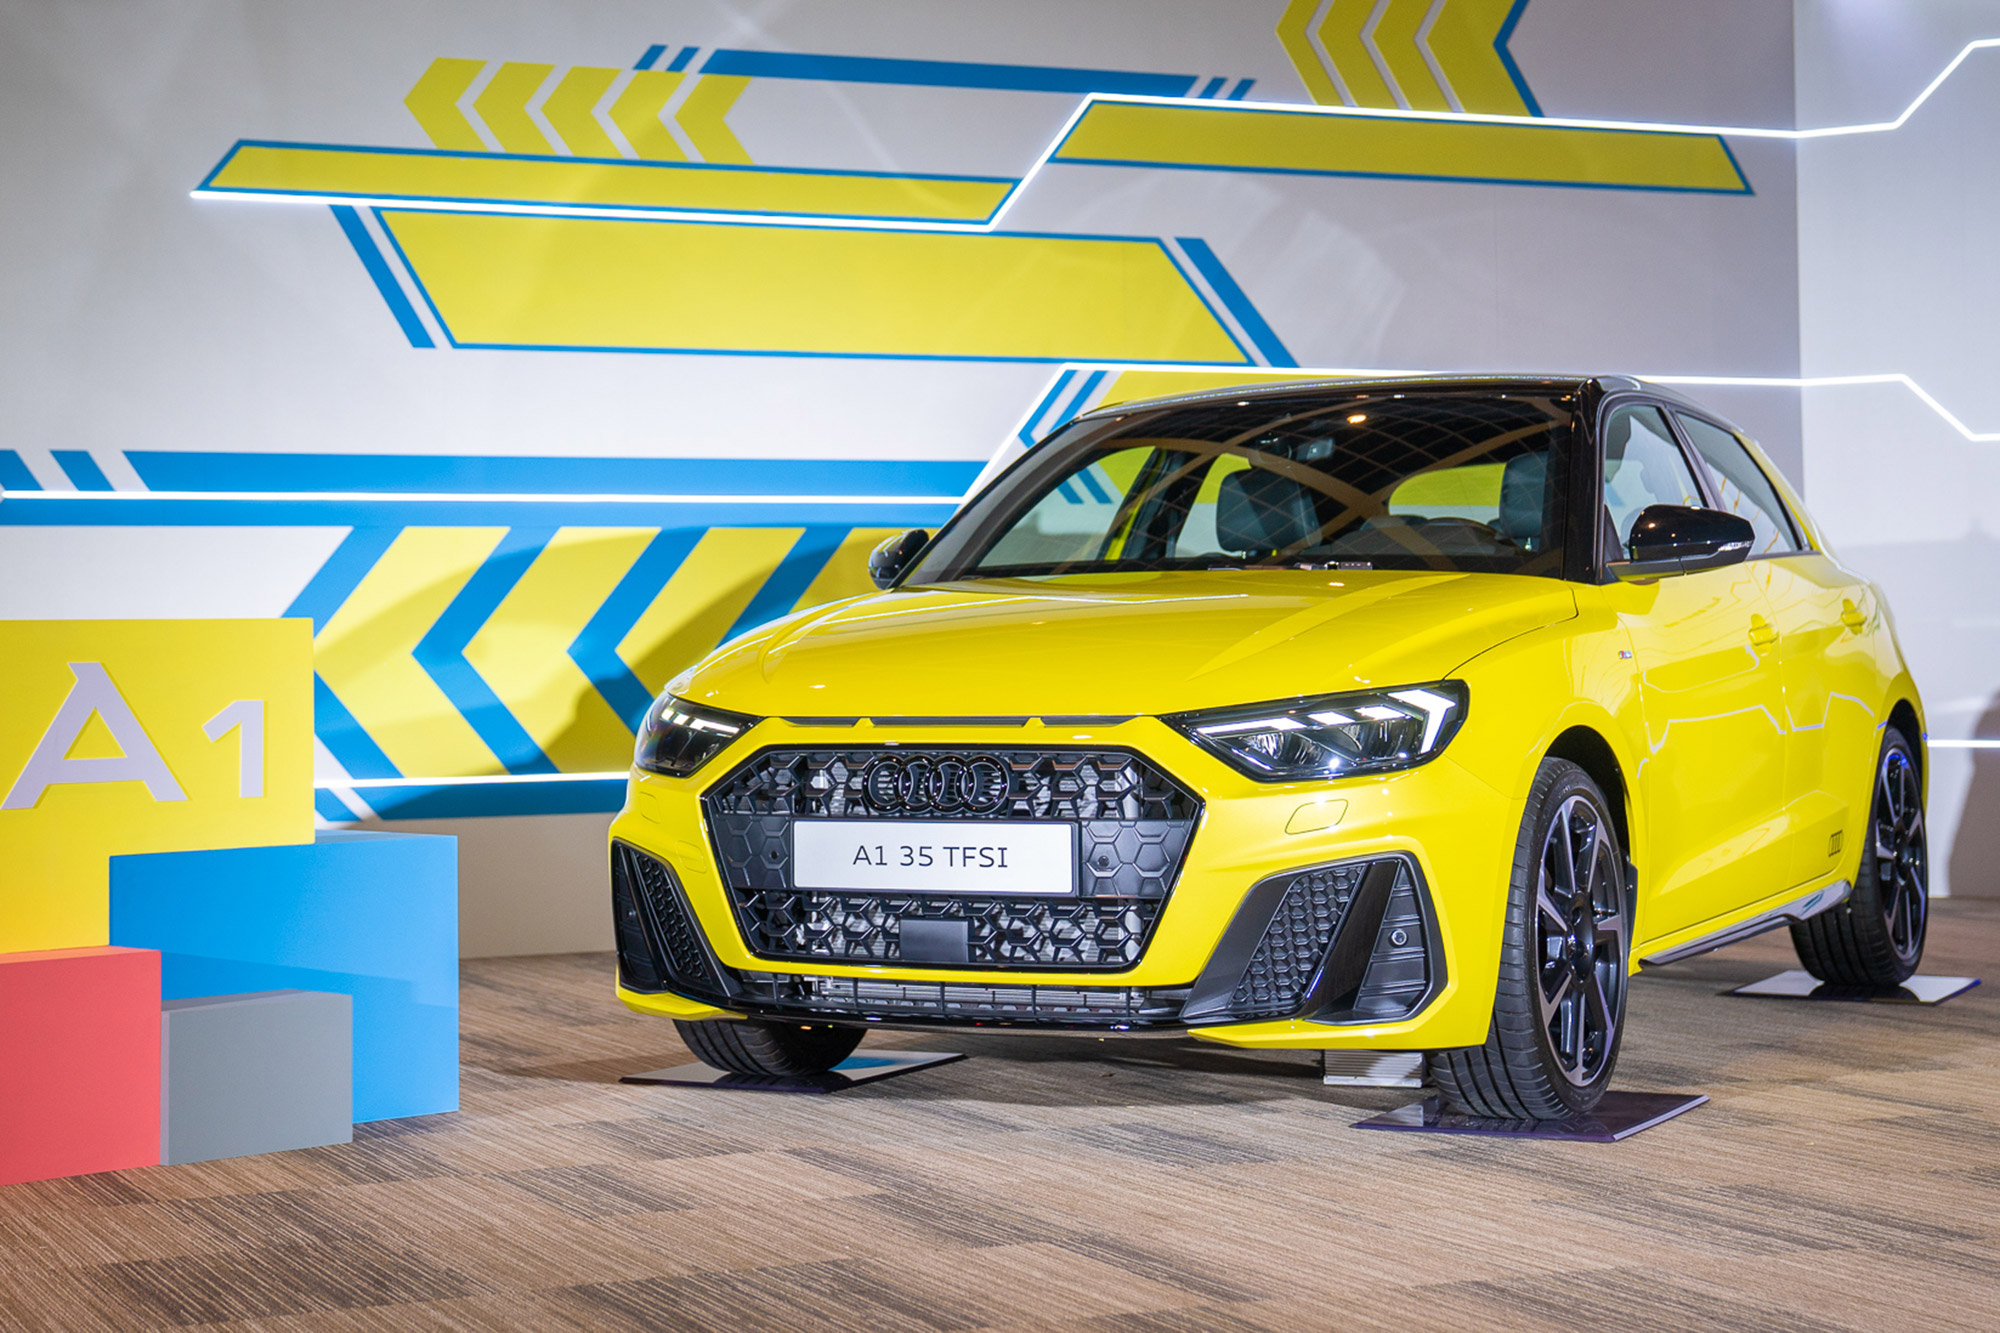 新世代 A1 Sportback 將在車展公佈預售價格與車型編成。